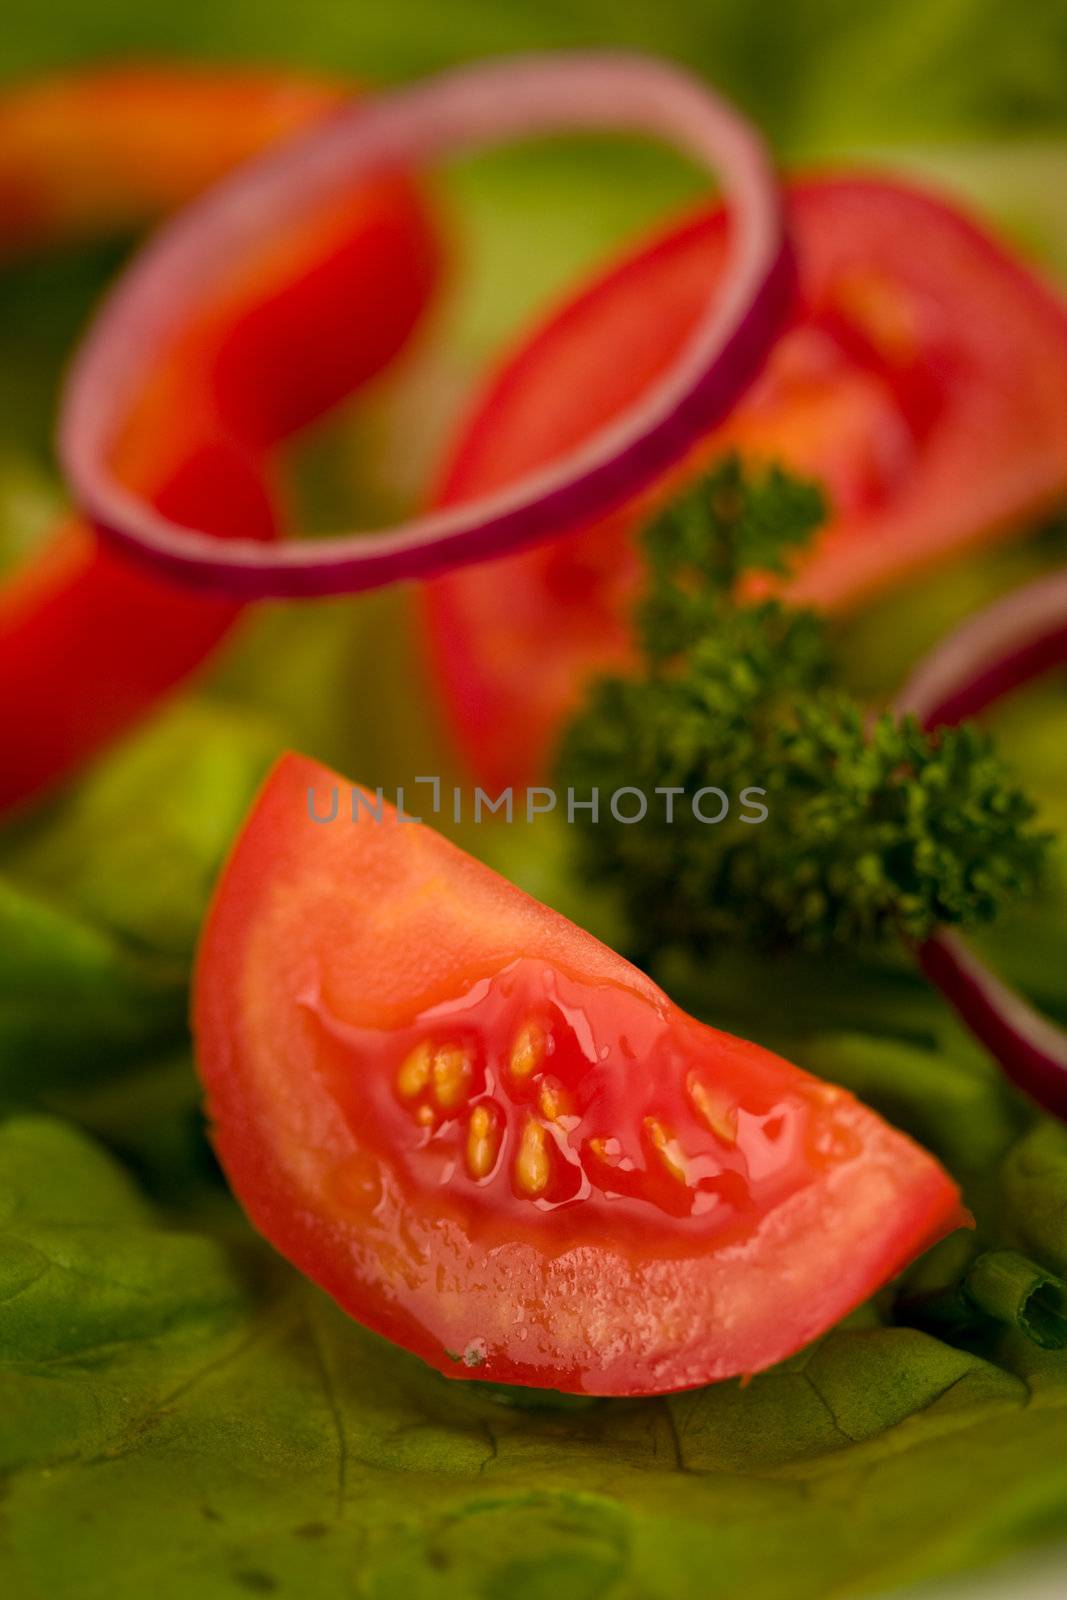 tomato slice on salad